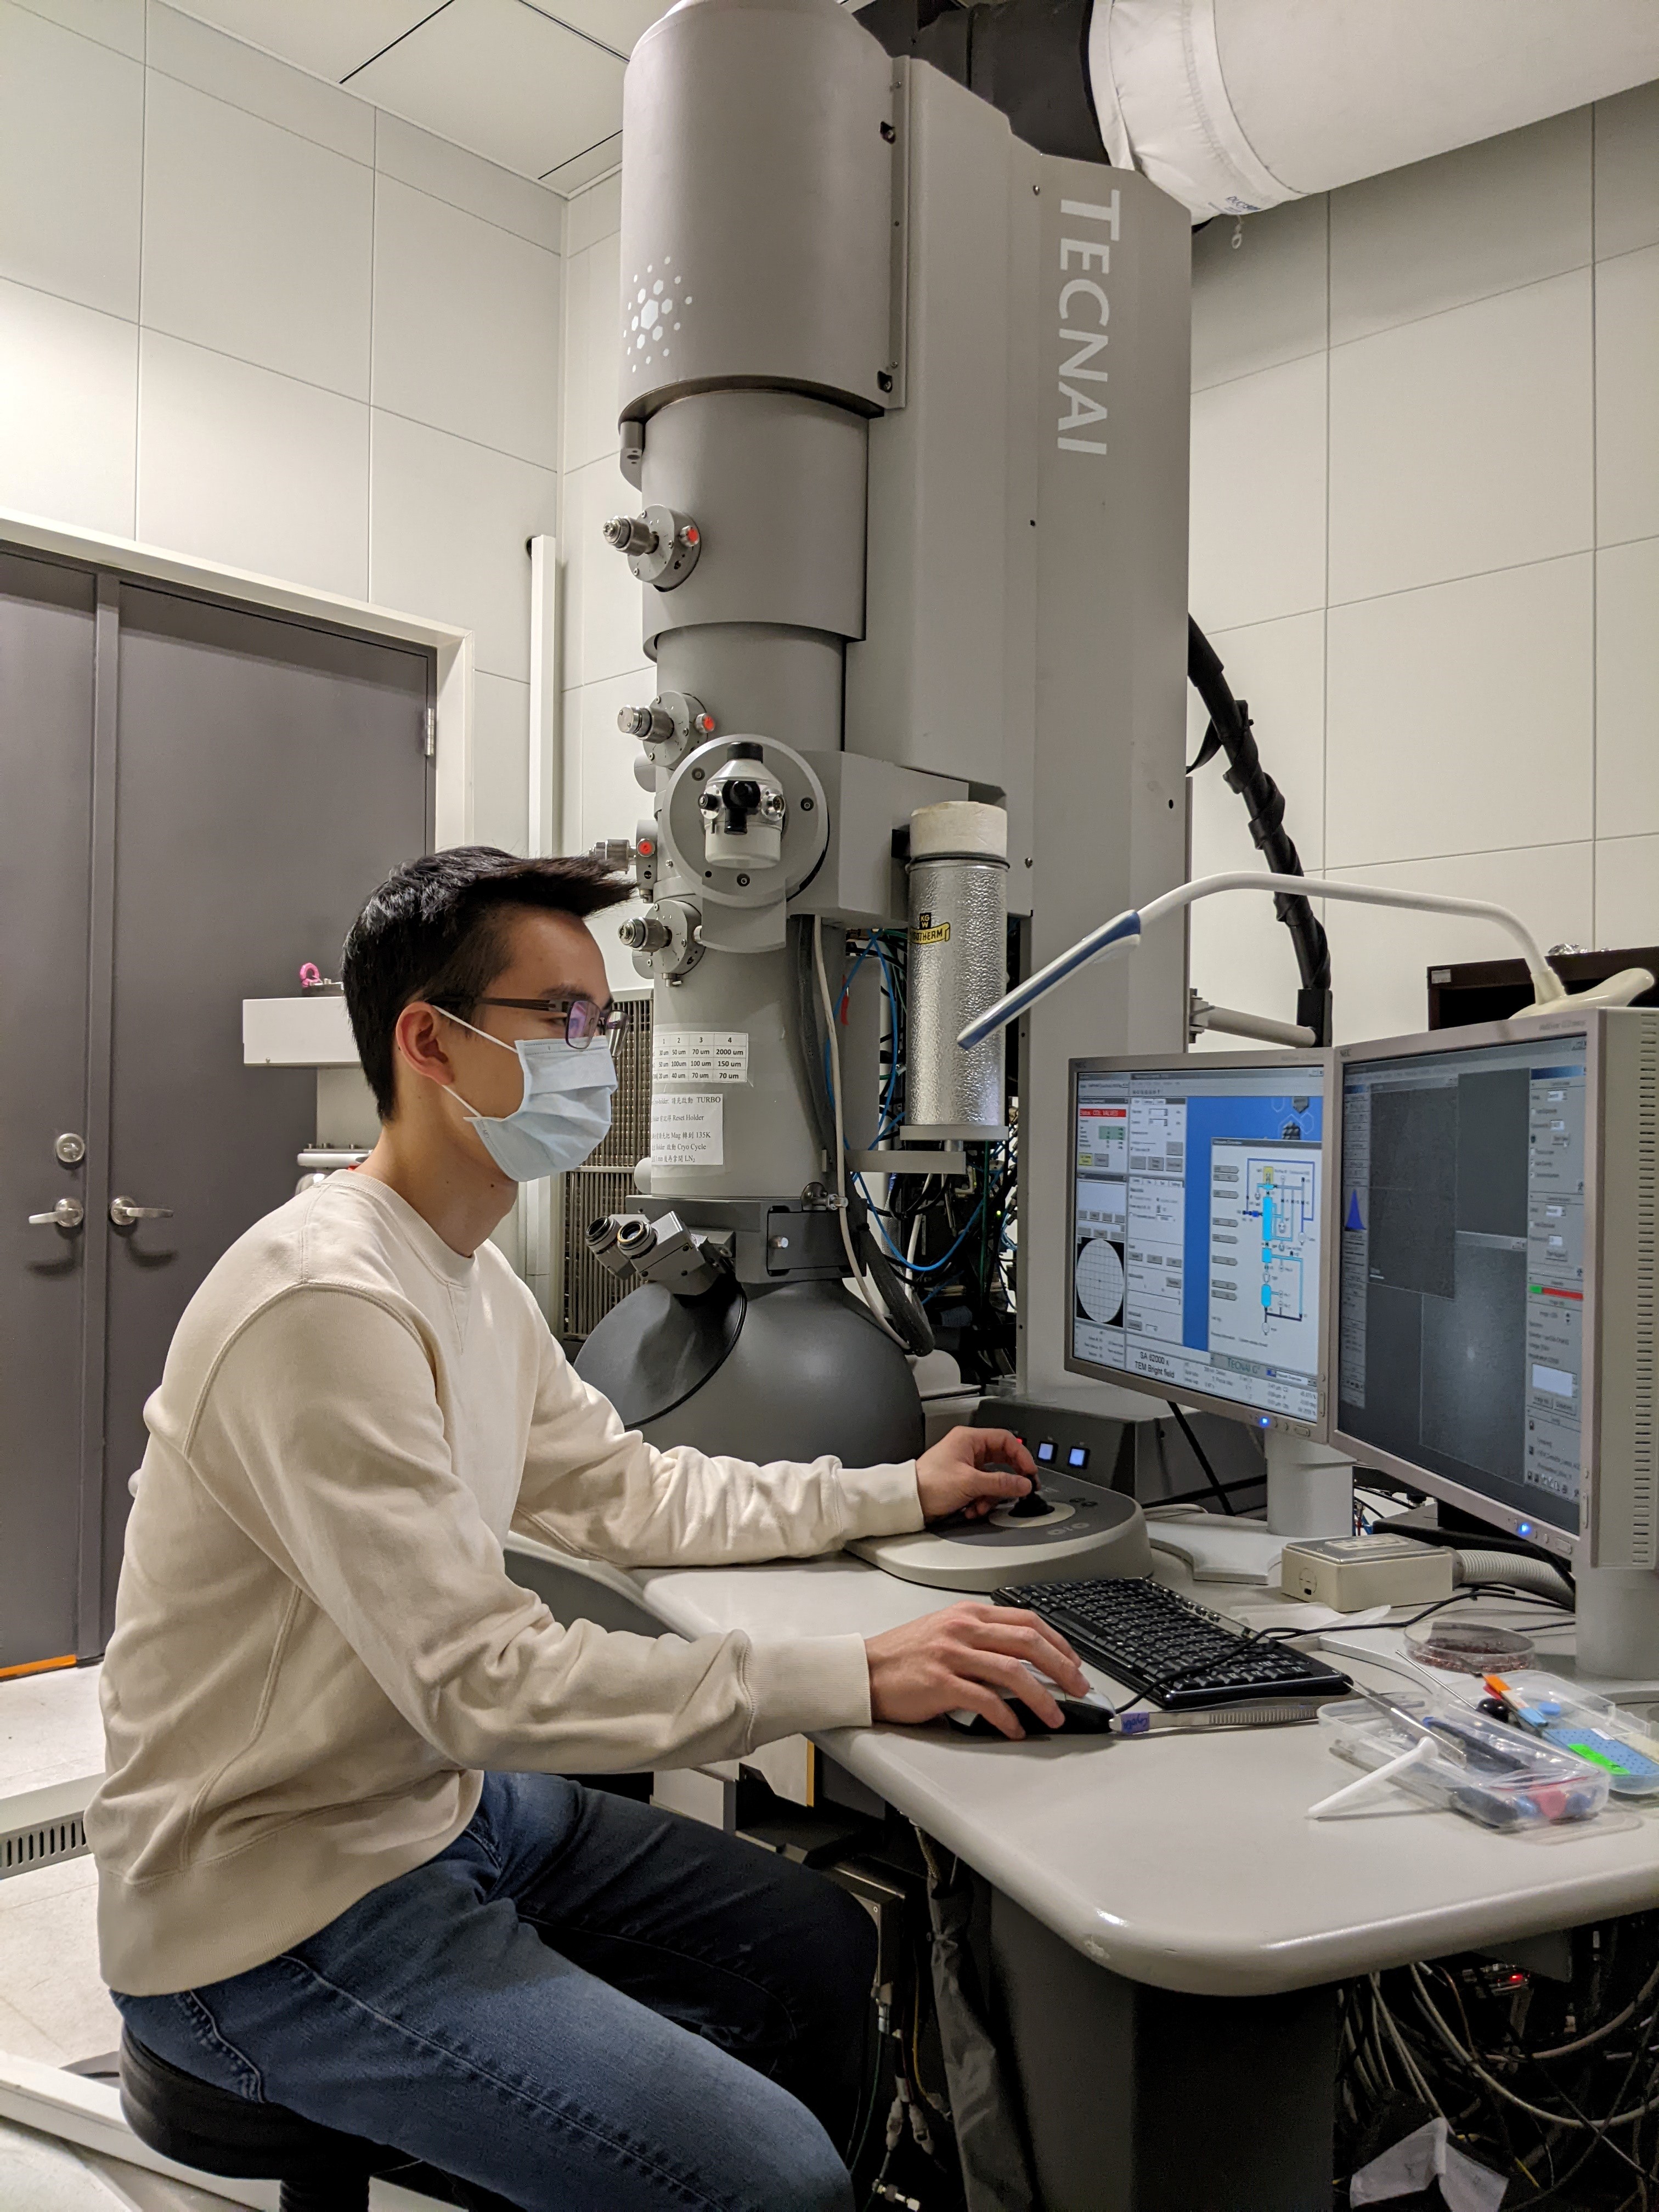 論文第二作者許紘愷碩士於中央研究院操作冷凍電子顯微鏡